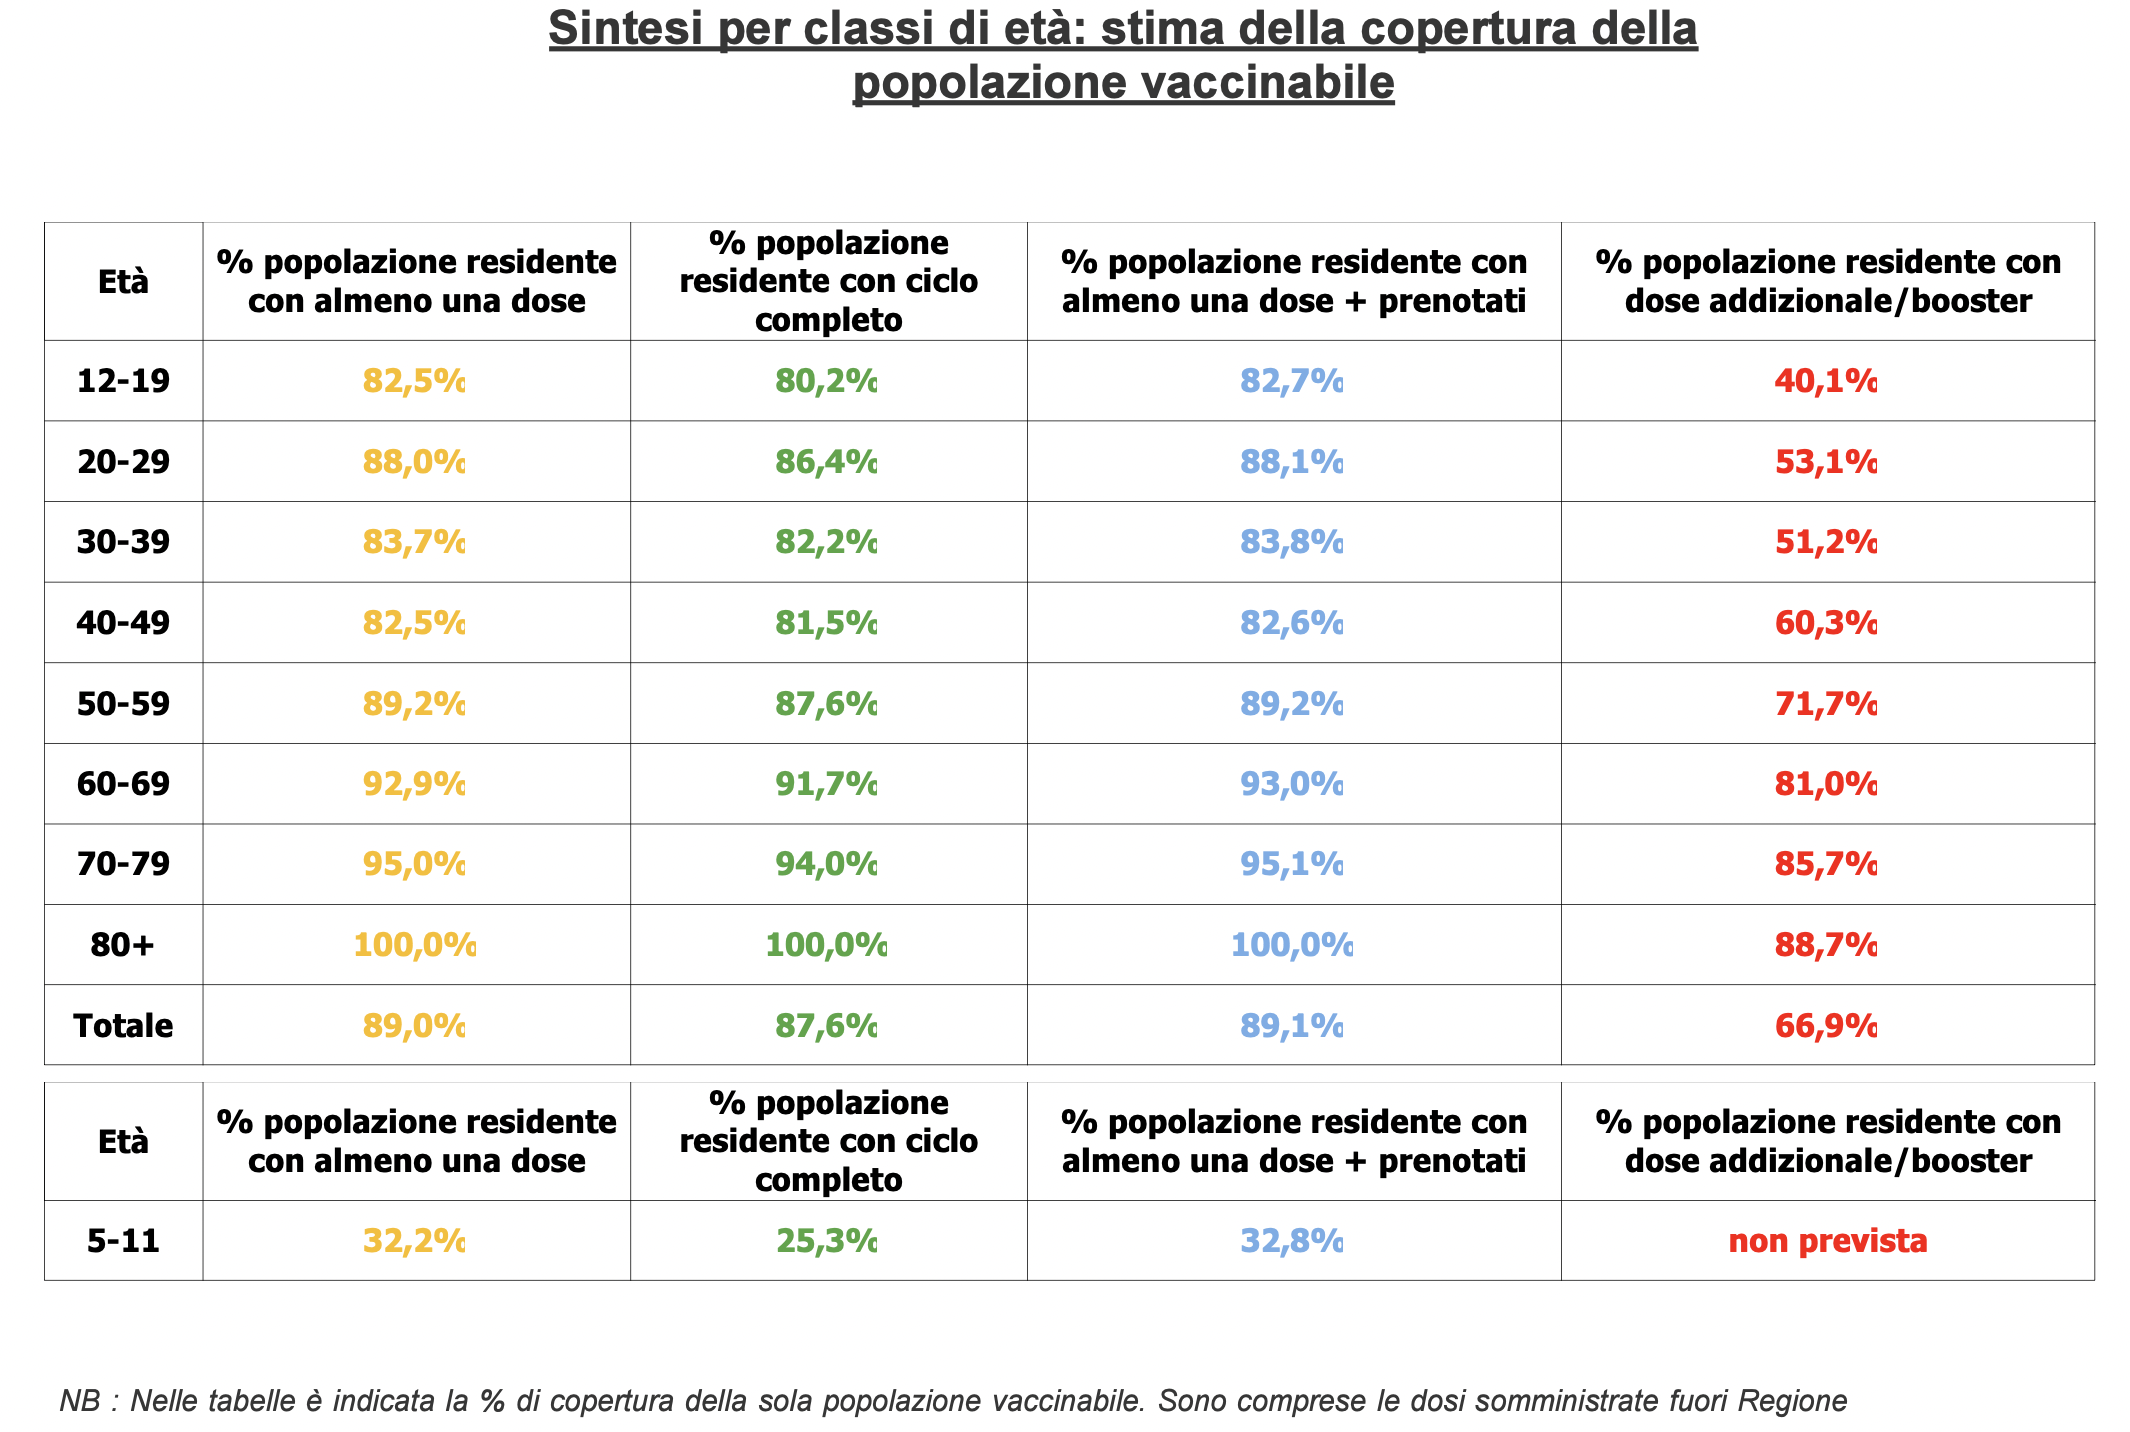 Stima copertura popolazione vaccinabile in Veneto il 9 febbraio alle 23.59